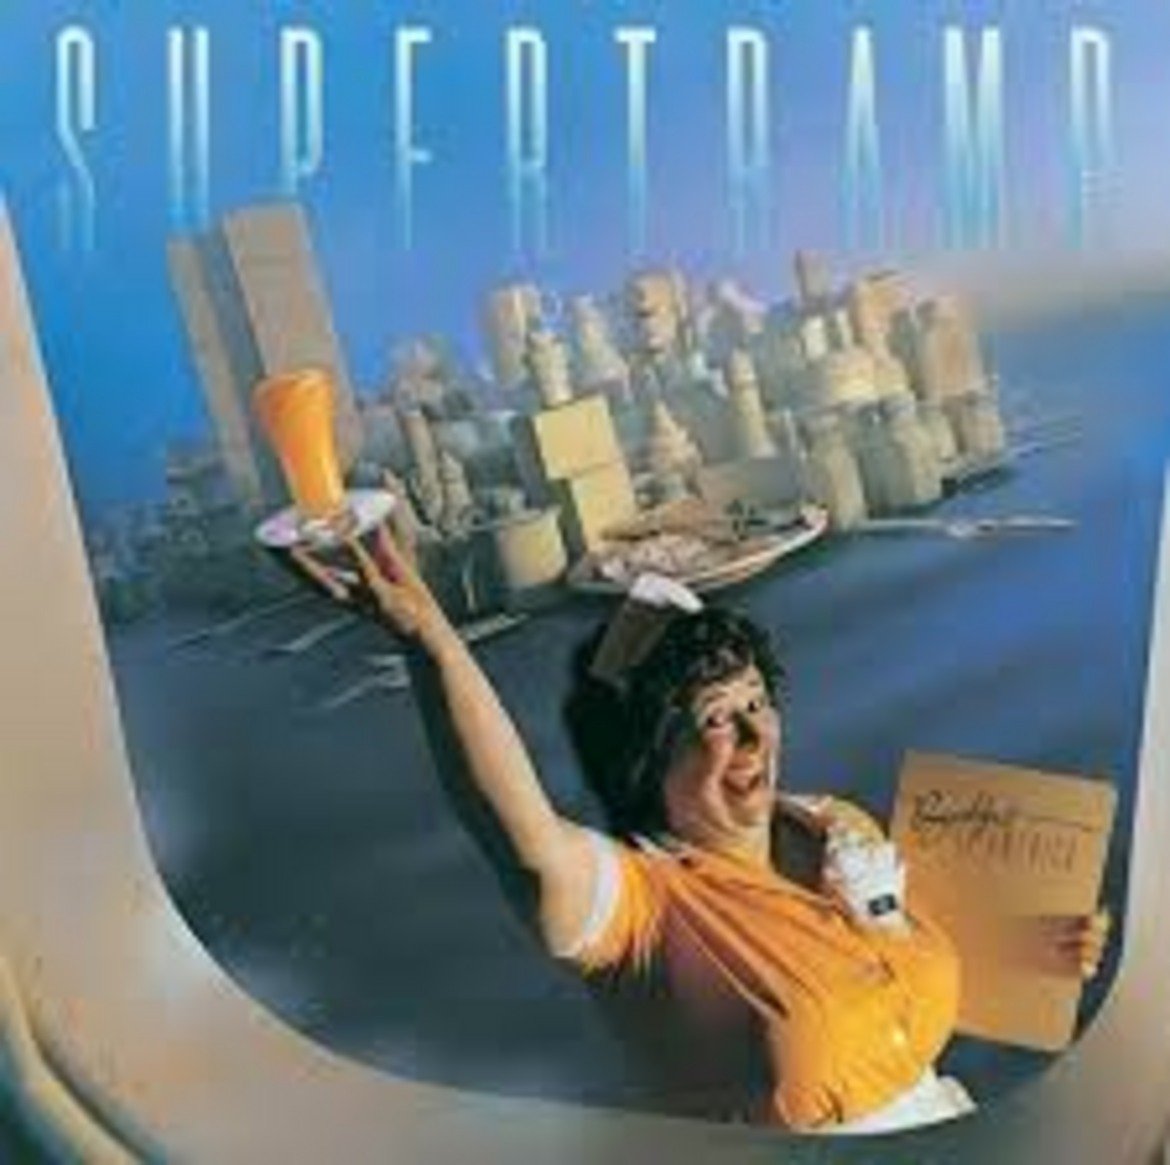  Supertramp - Breakfast in America 

Песента от 1979-а не се казва "Take a look at my girlfriend...", а "Breakfast in America" - реплика, която не се споменава и за момент в текста. Ако не сте я слушали и си я пуснете от любопитство, ще се сетите и за ремикса й на Gym Class Heroes. Който отново не се казва "Take a look at my girlfriend”, a "Cupid's Chokehold".